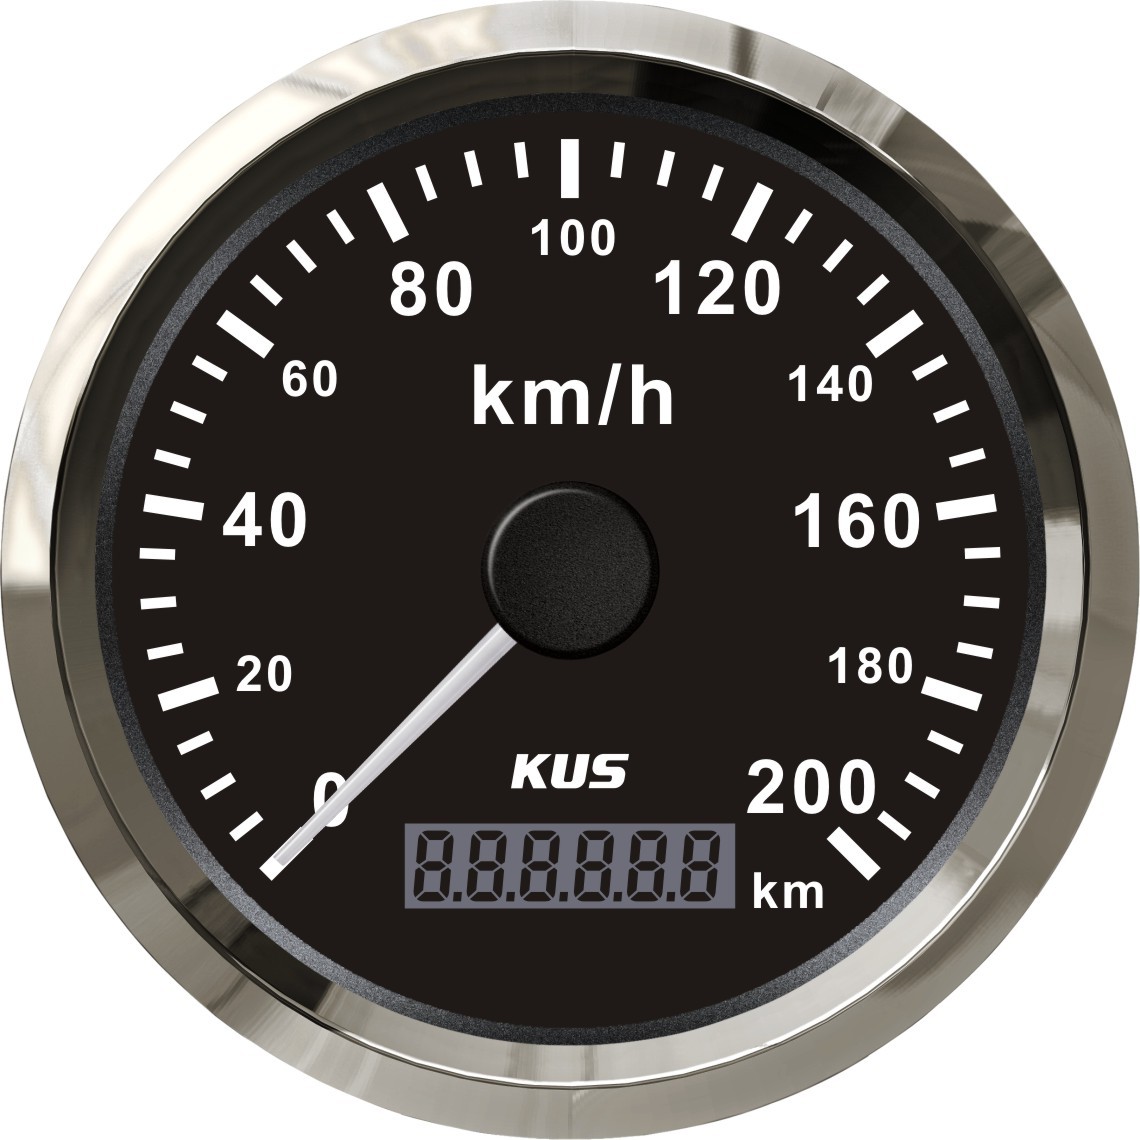 KUS SV GPS Speedometer(KM/H)